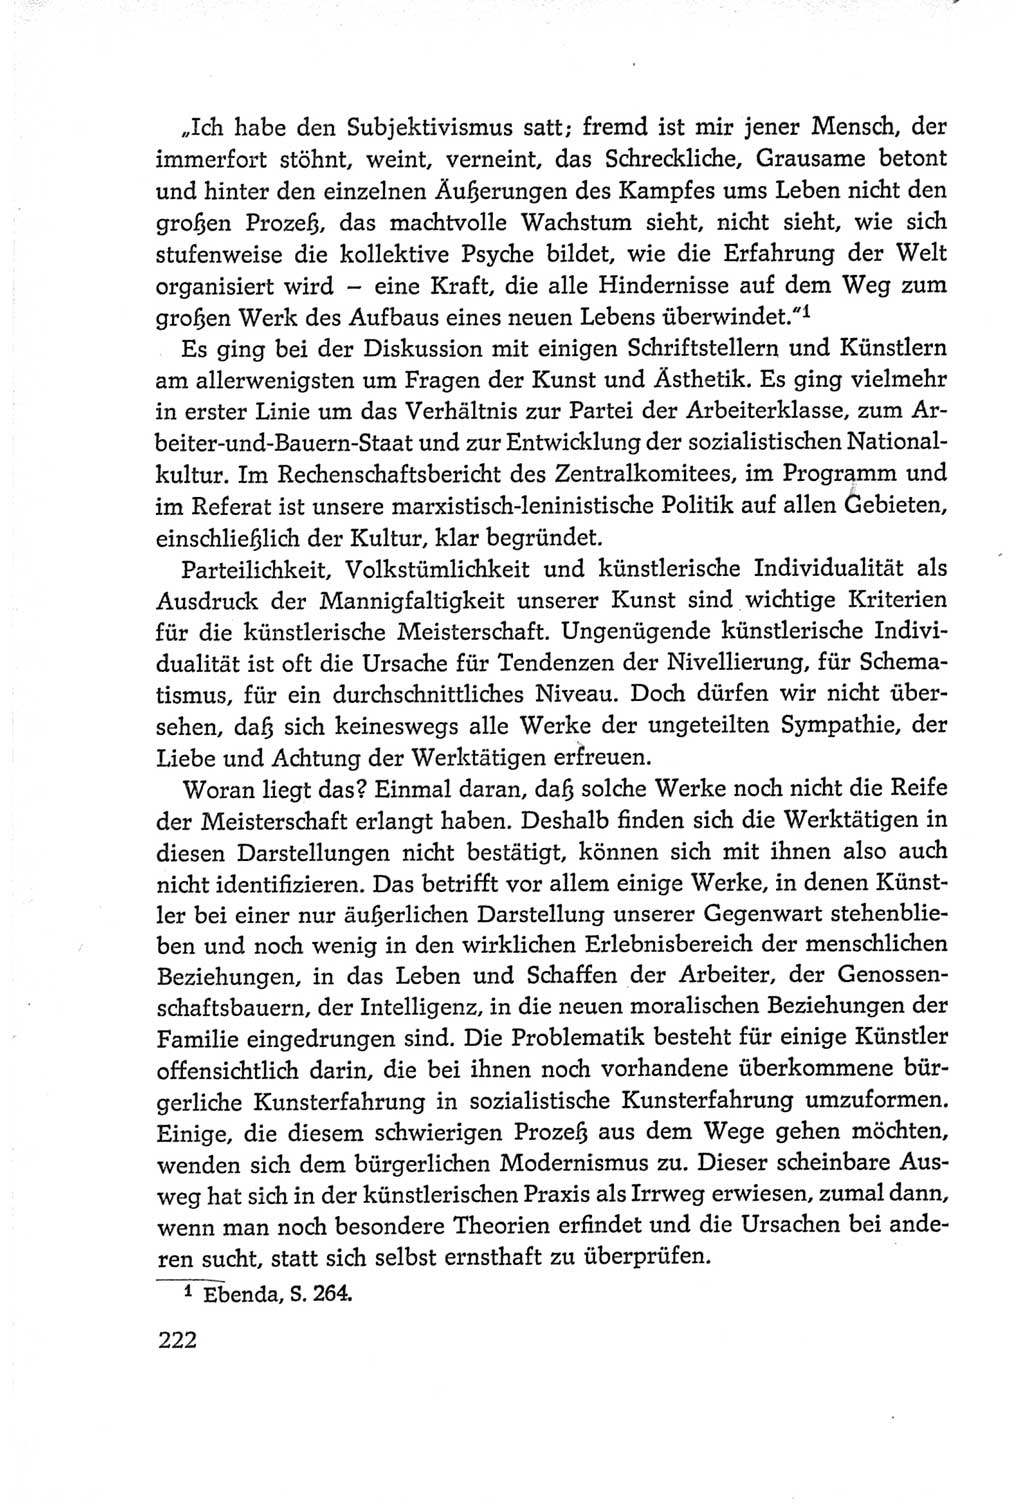 Protokoll der Verhandlungen des Ⅵ. Parteitages der Sozialistischen Einheitspartei Deutschlands (SED) [Deutsche Demokratische Republik (DDR)] 1963, Band Ⅰ, Seite 222 (Prot. Verh. Ⅵ. PT SED DDR 1963, Bd. Ⅰ, S. 222)